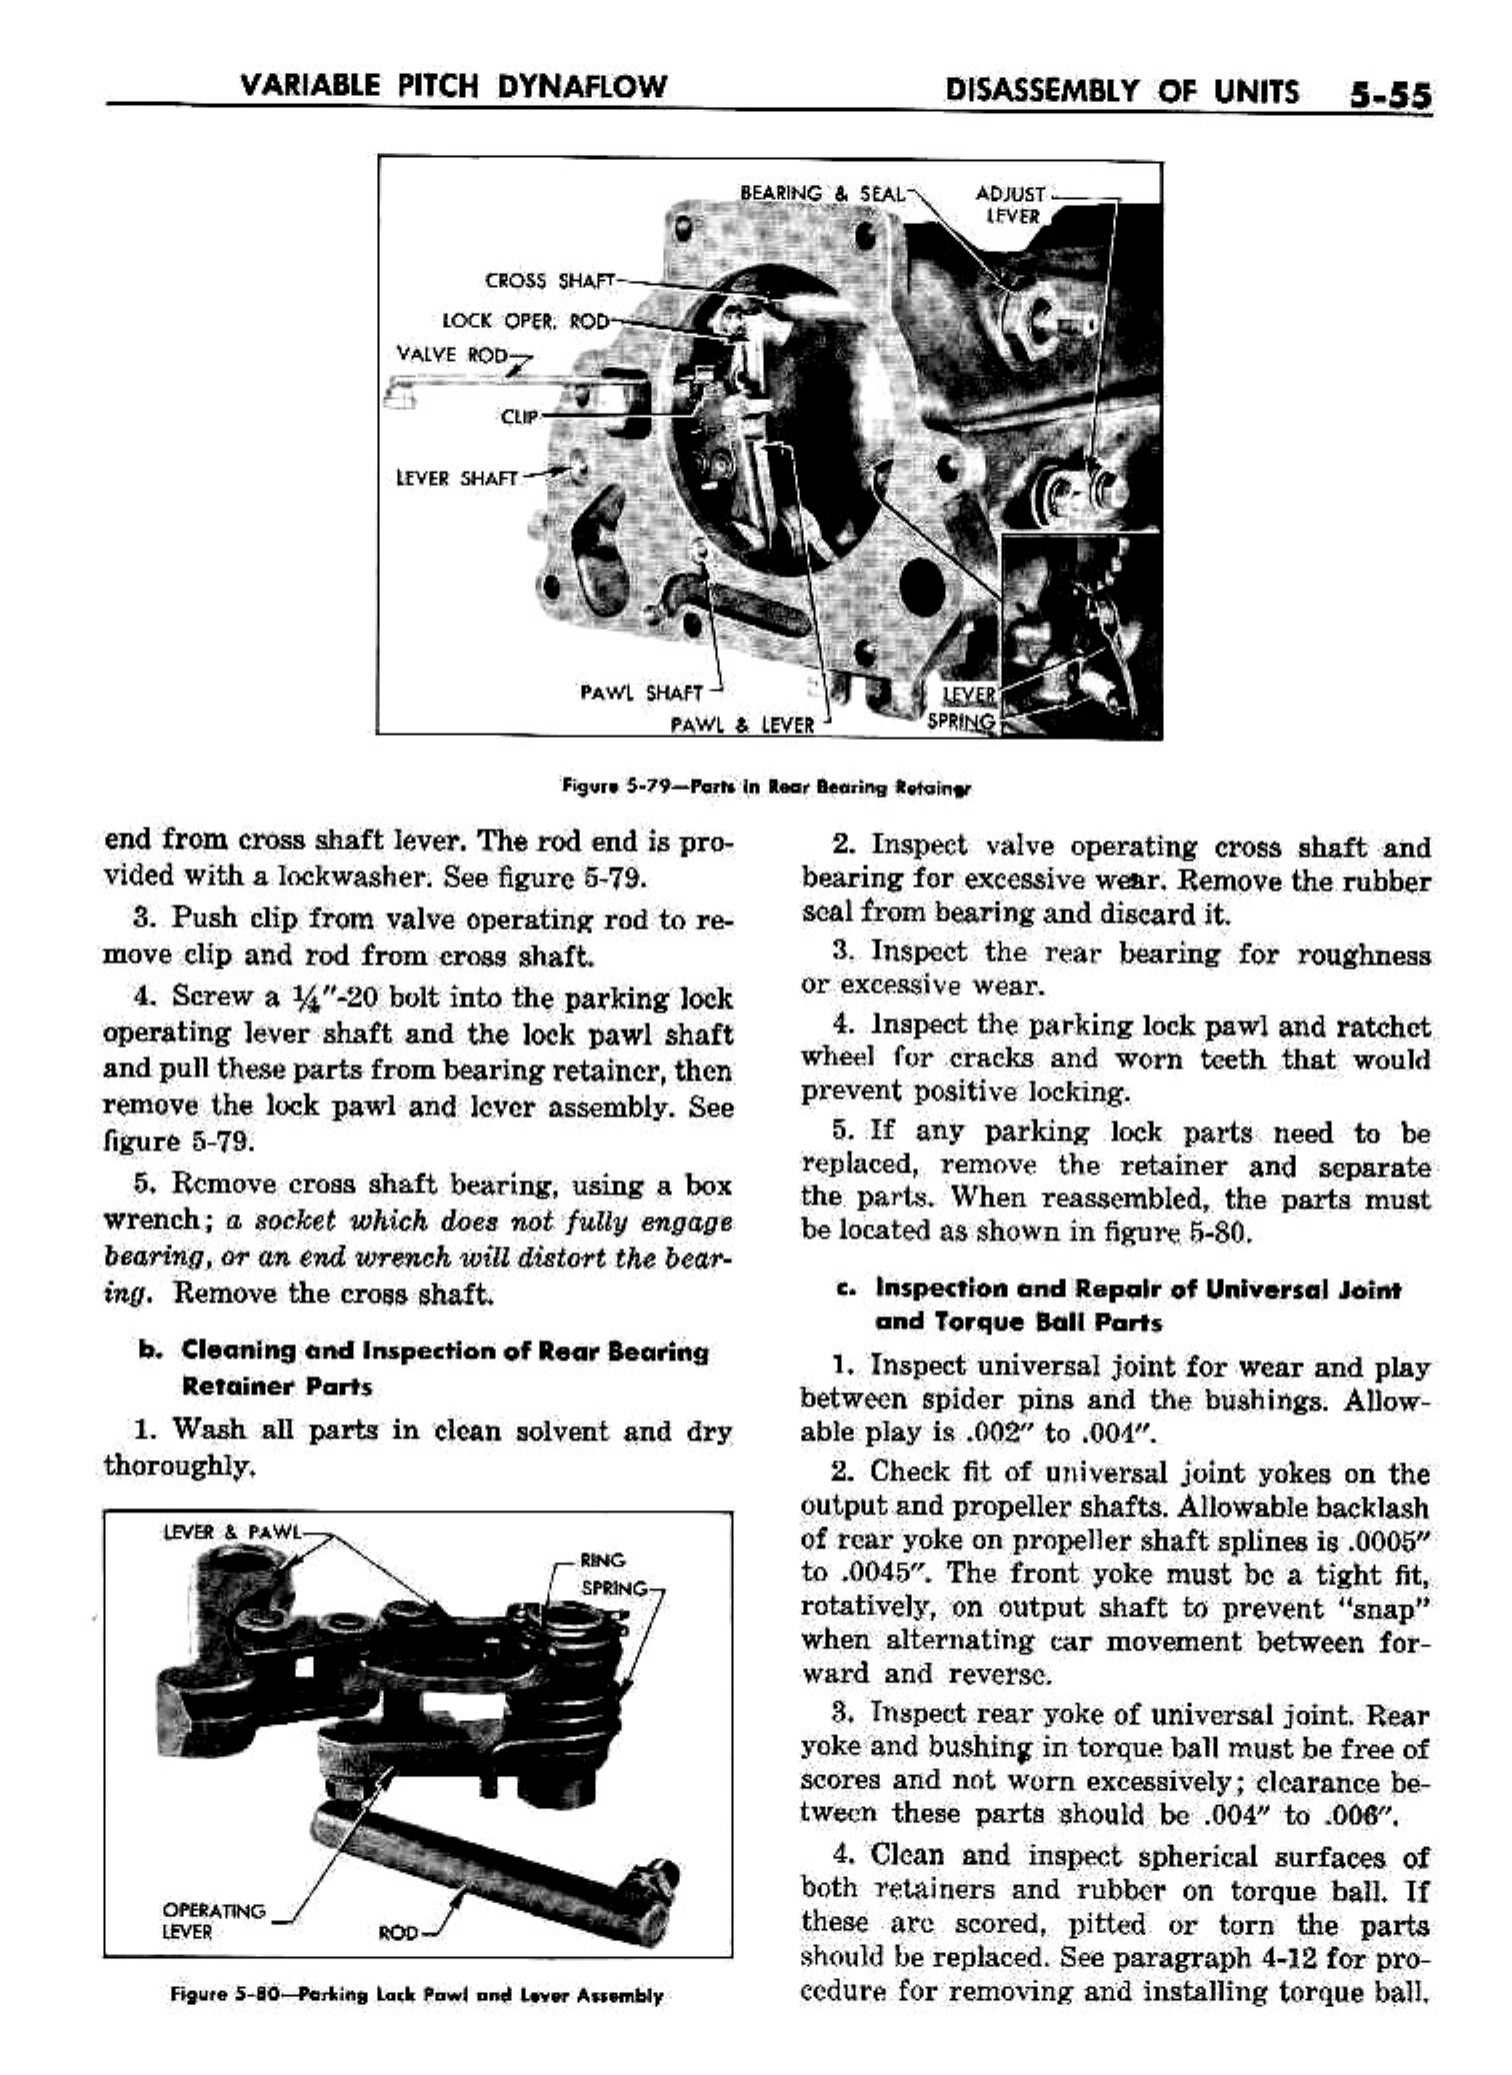 n_06 1958 Buick Shop Manual - Dynaflow_55.jpg